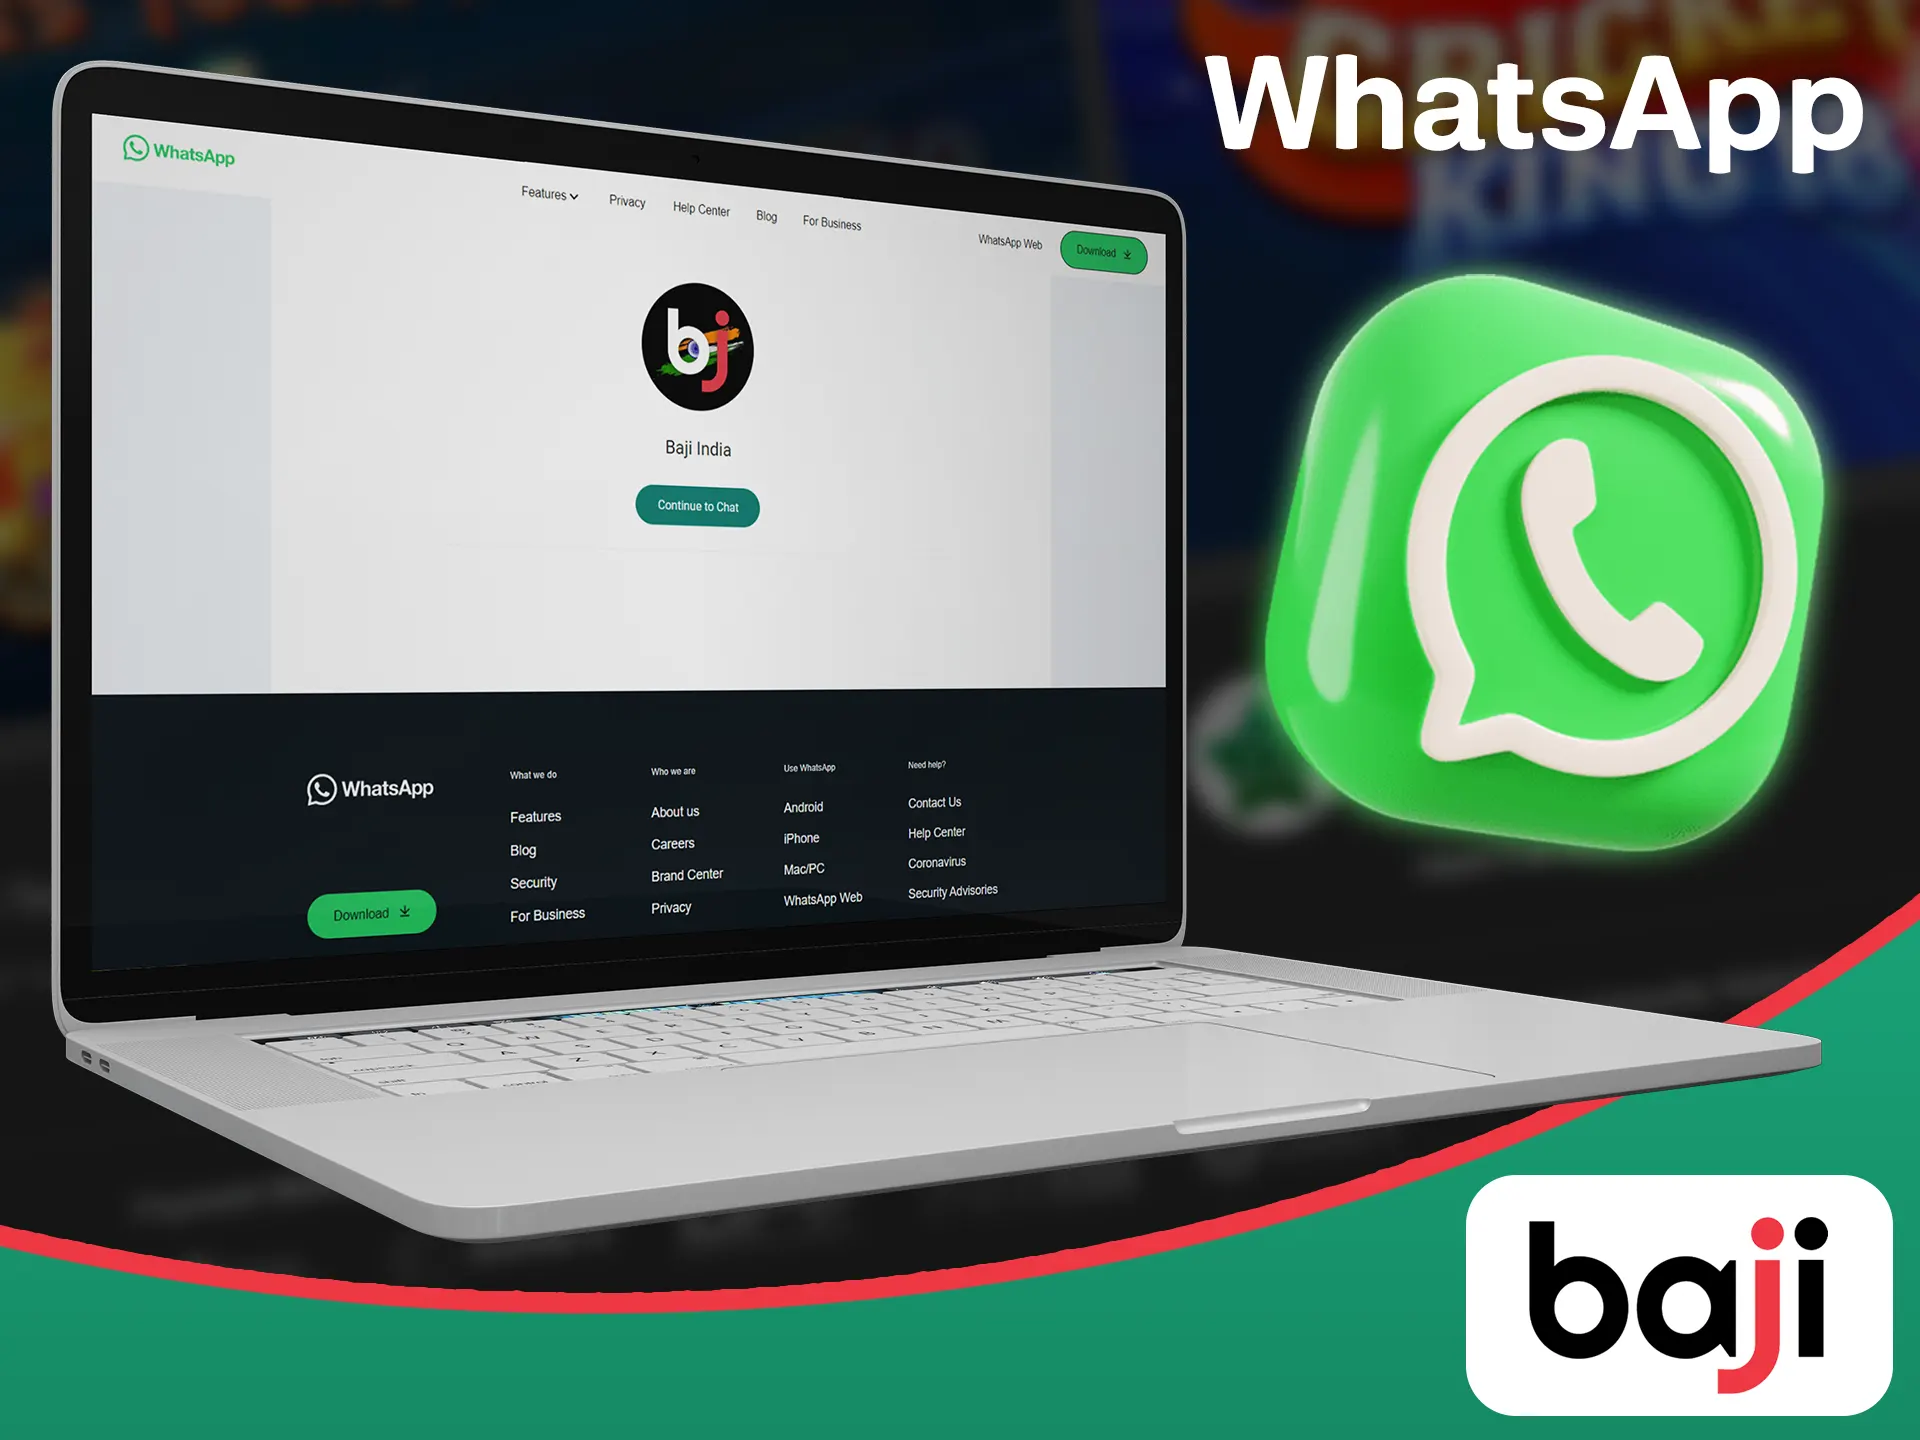 Contact Baji by using WhatsApp.